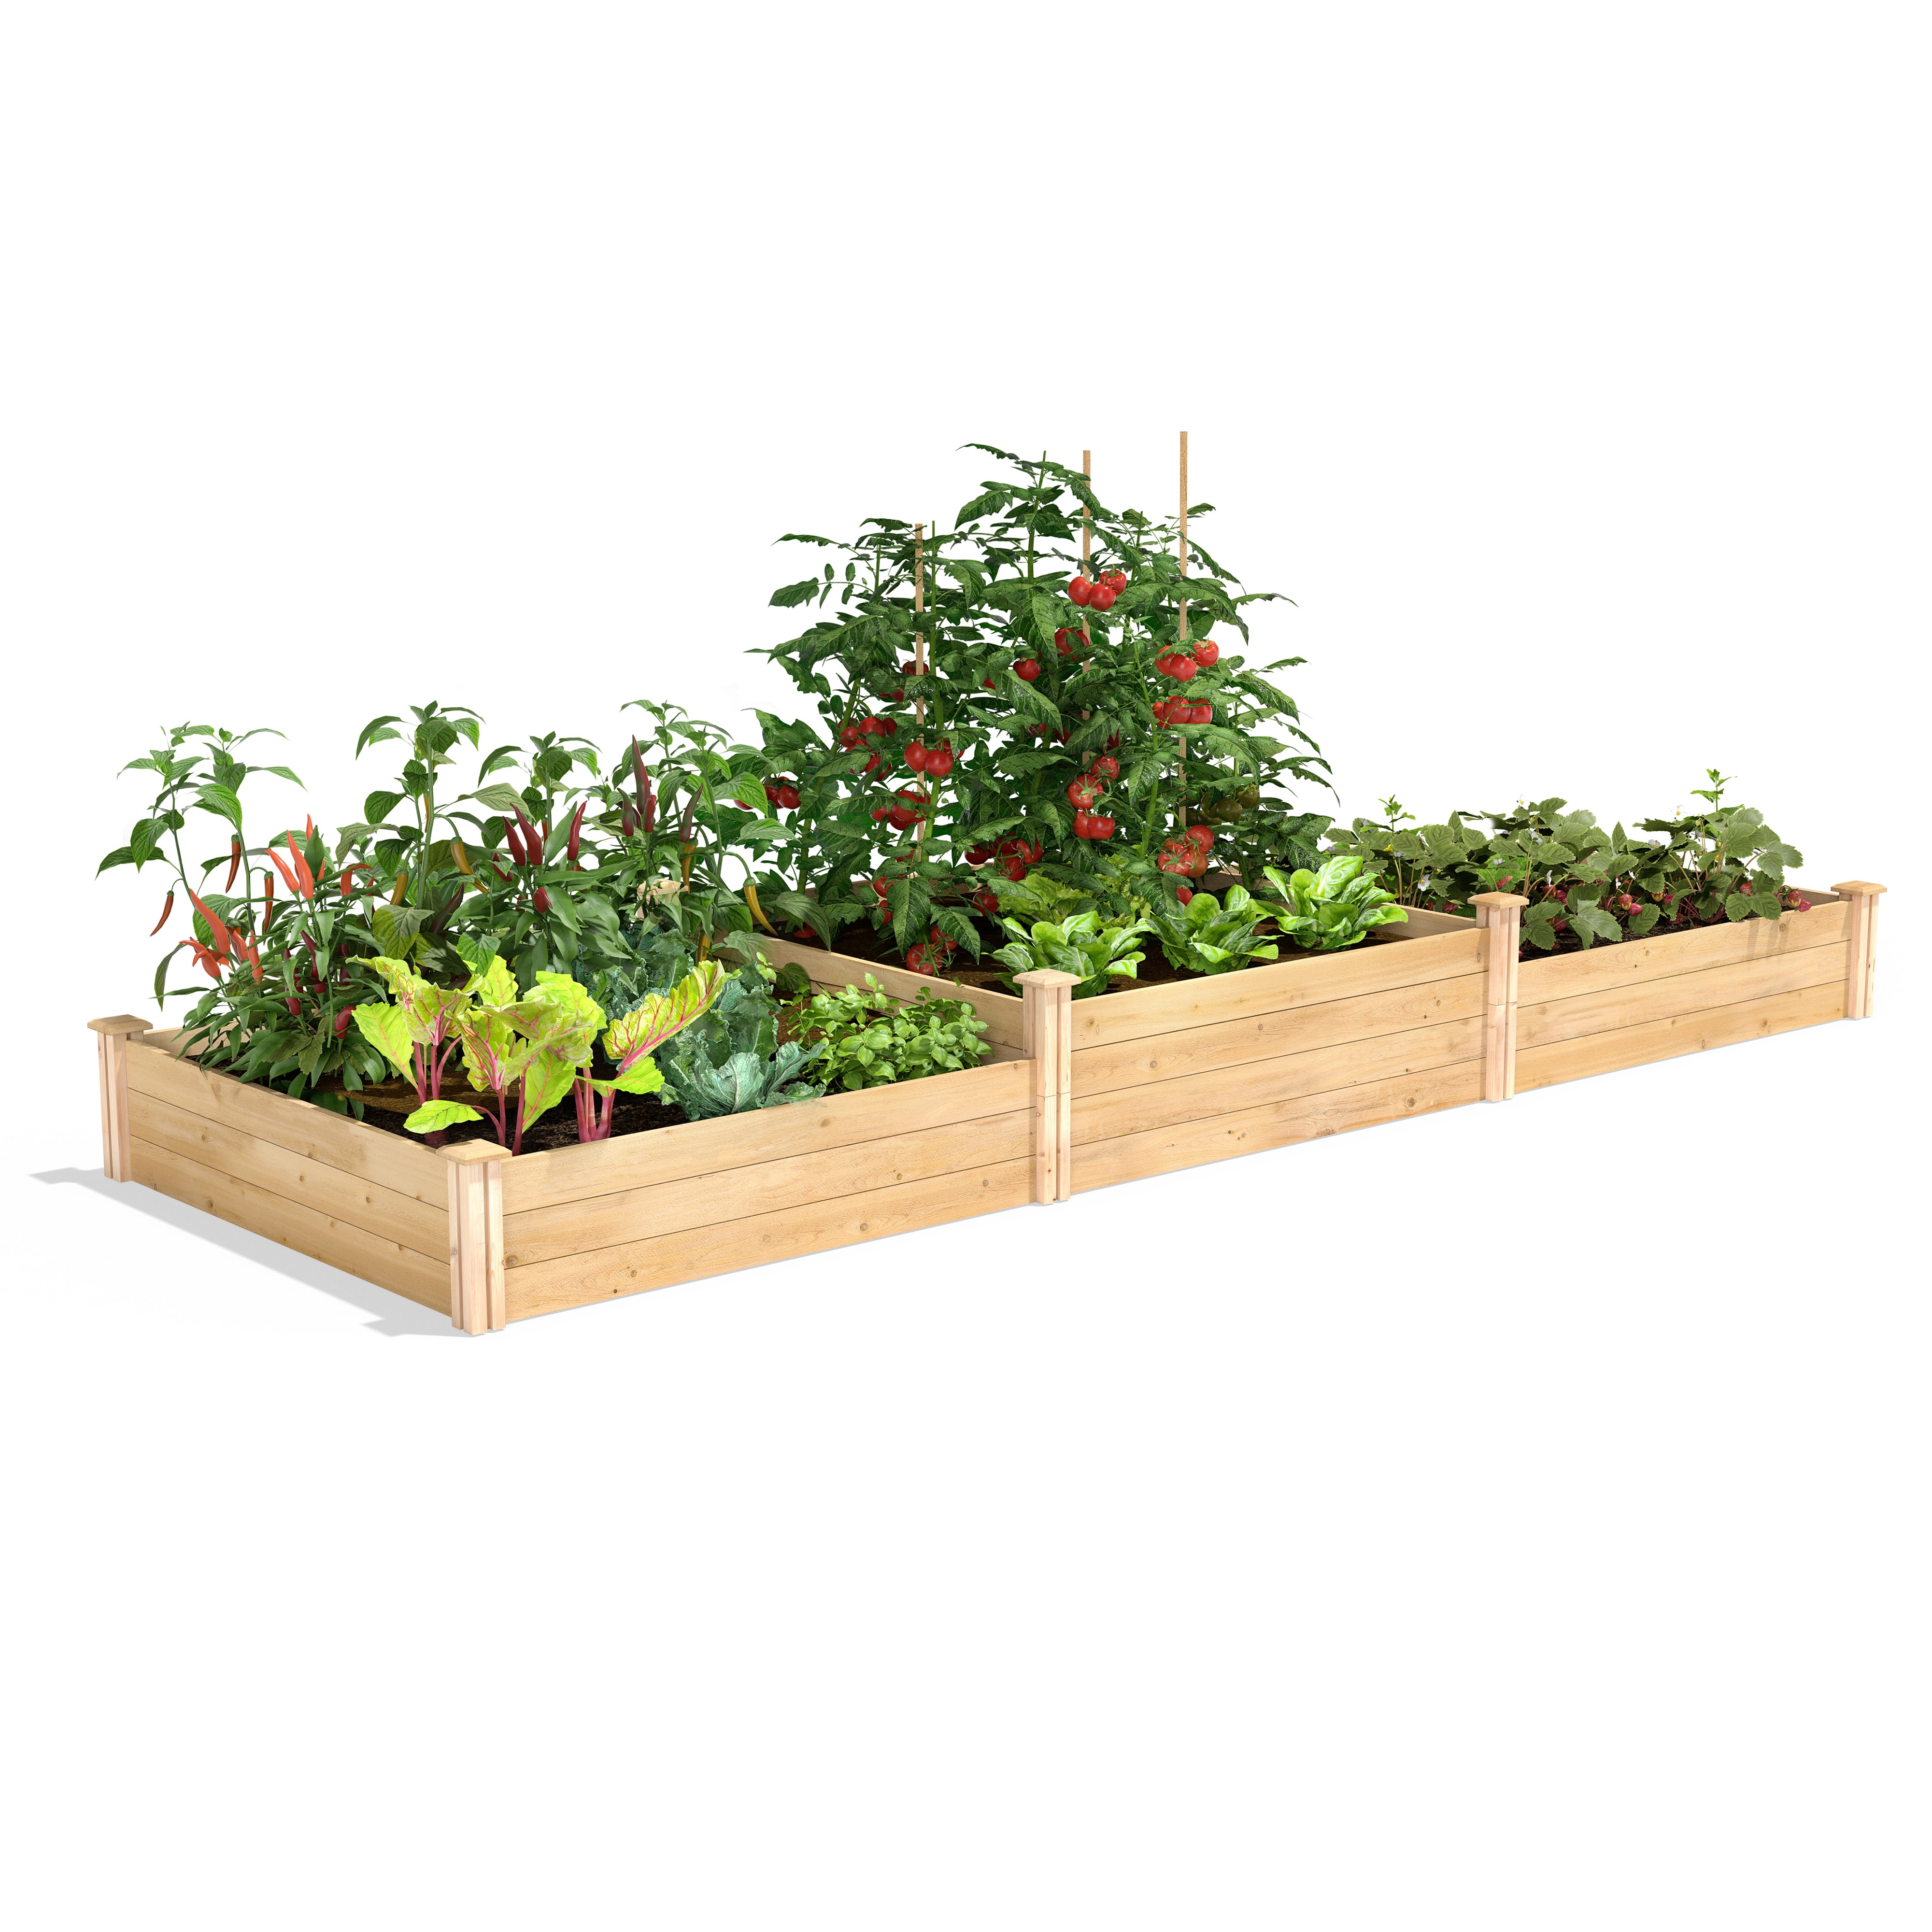 4 ft x 8 ft original cedar raised garden bedfence greenes wood x 7-10.5 in 